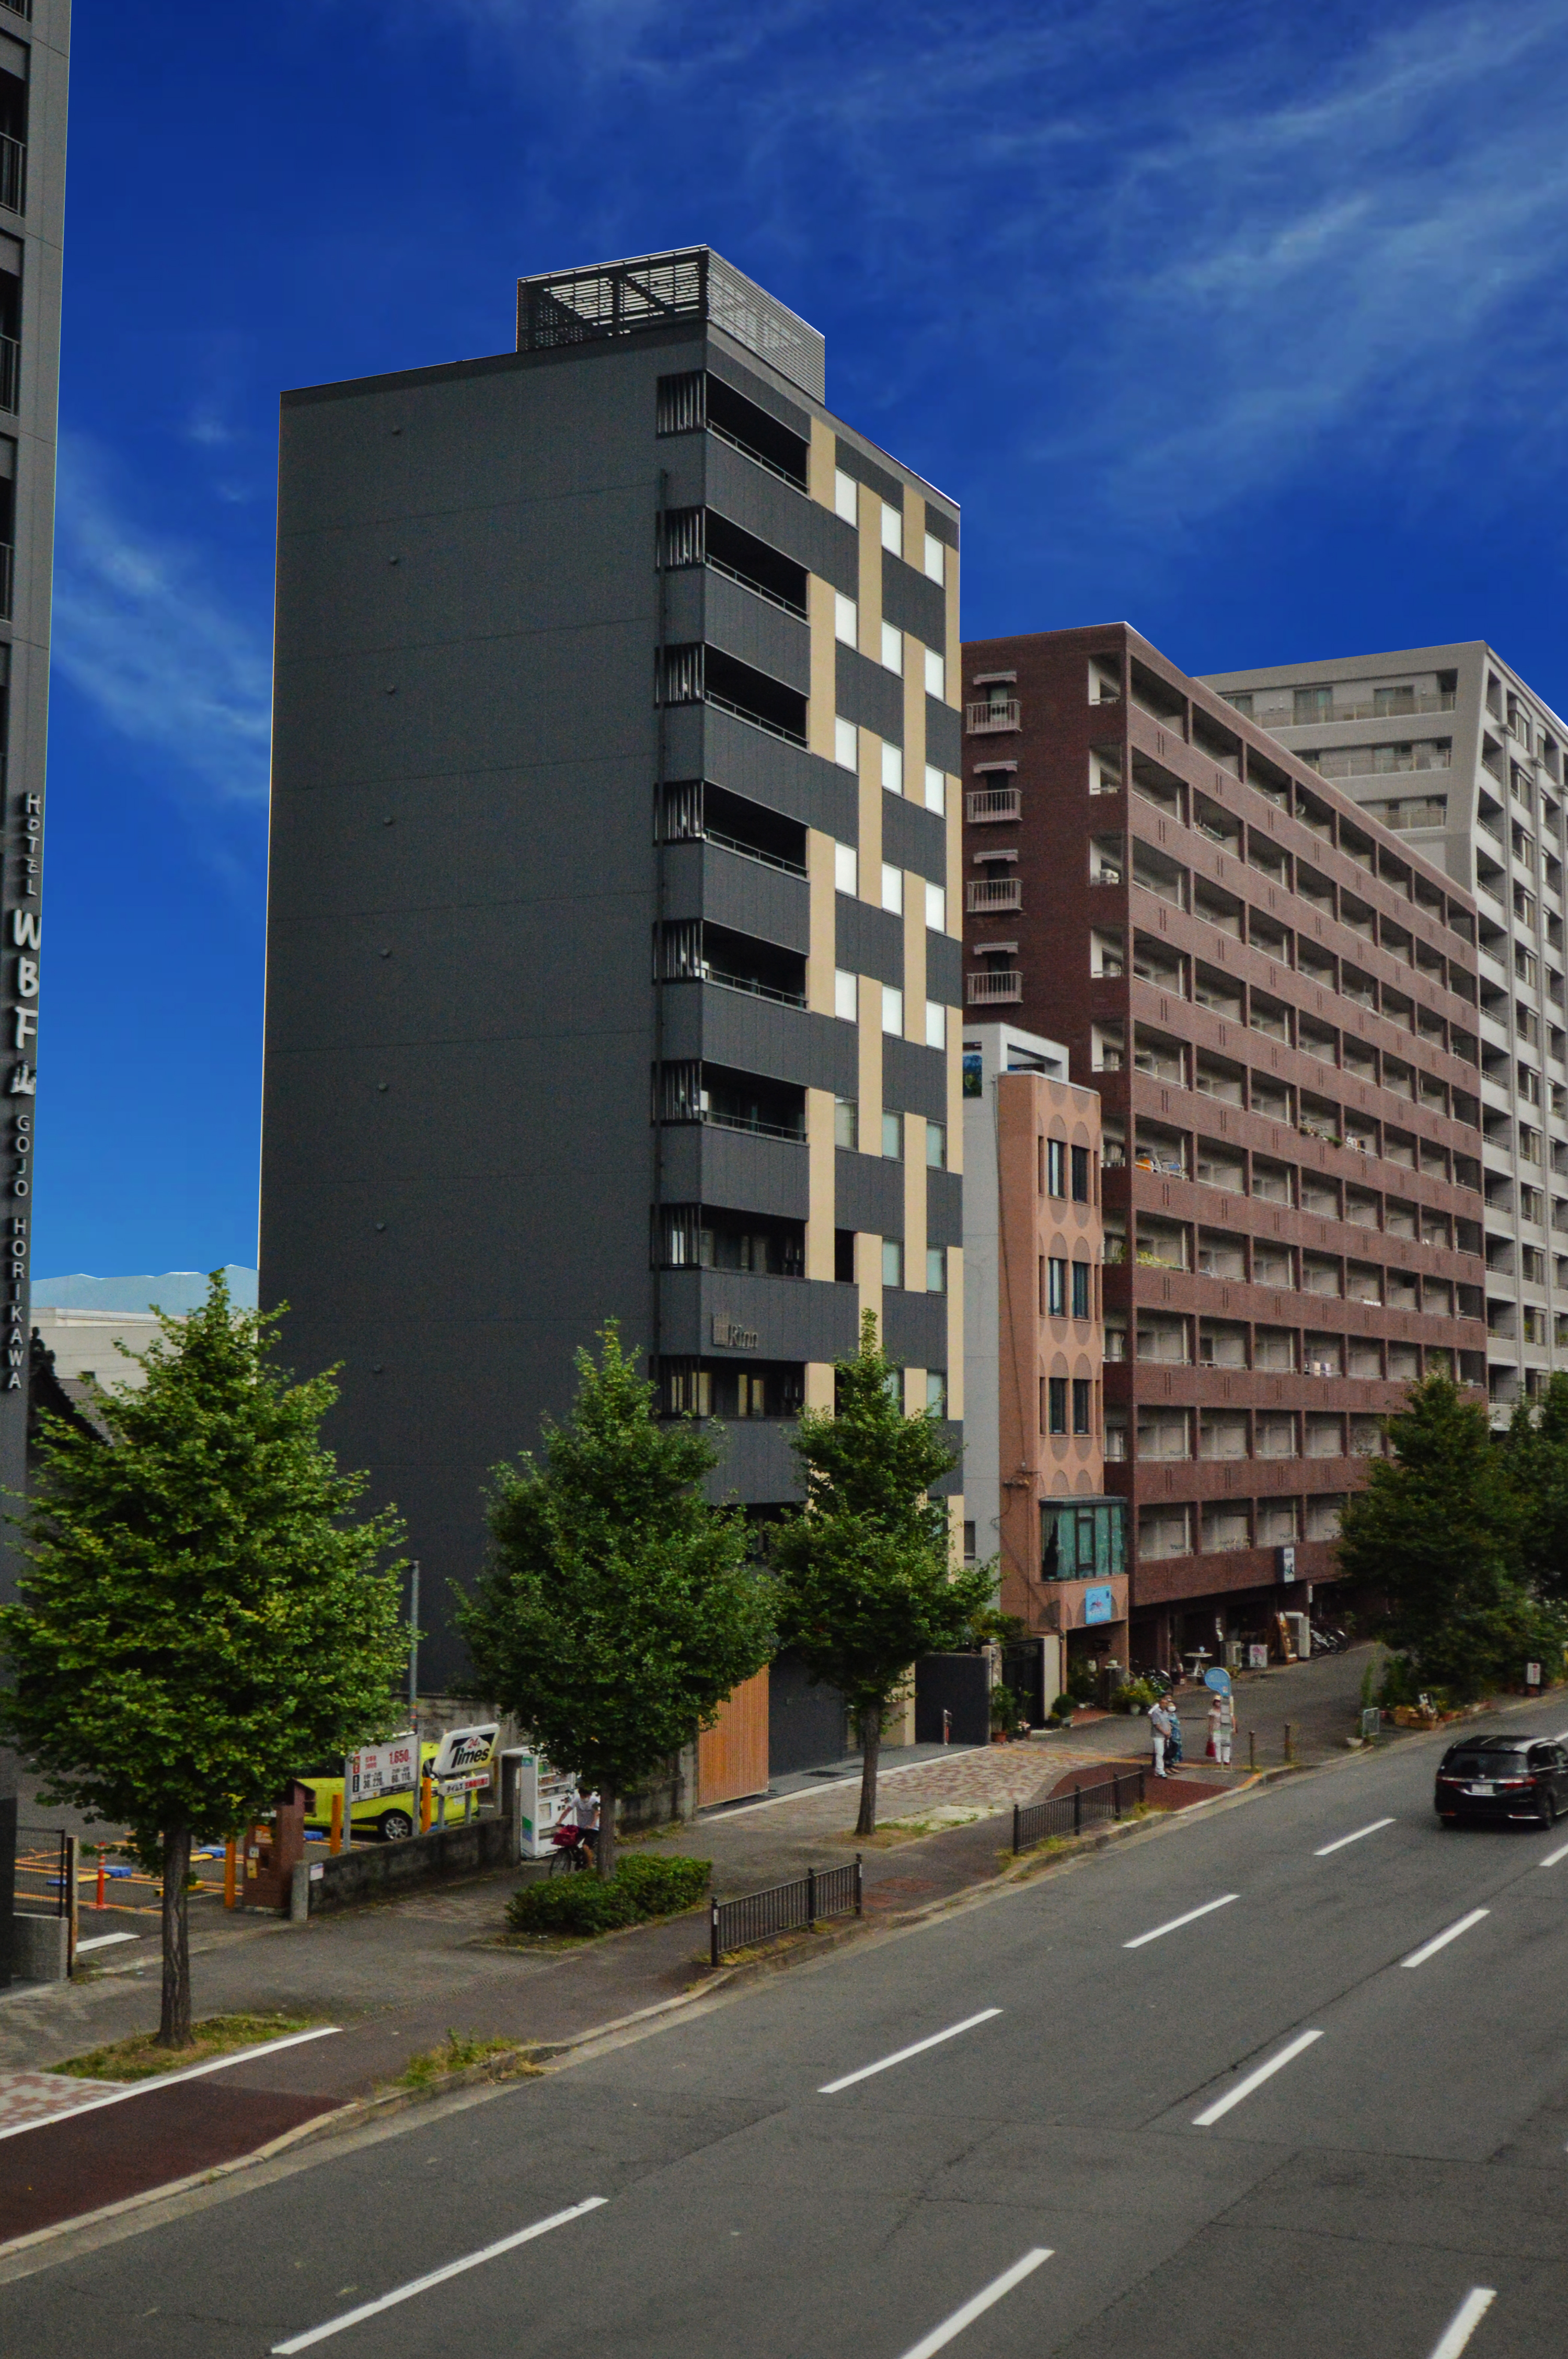 【堀川五条】バス停留所はホテル目の前にございます。